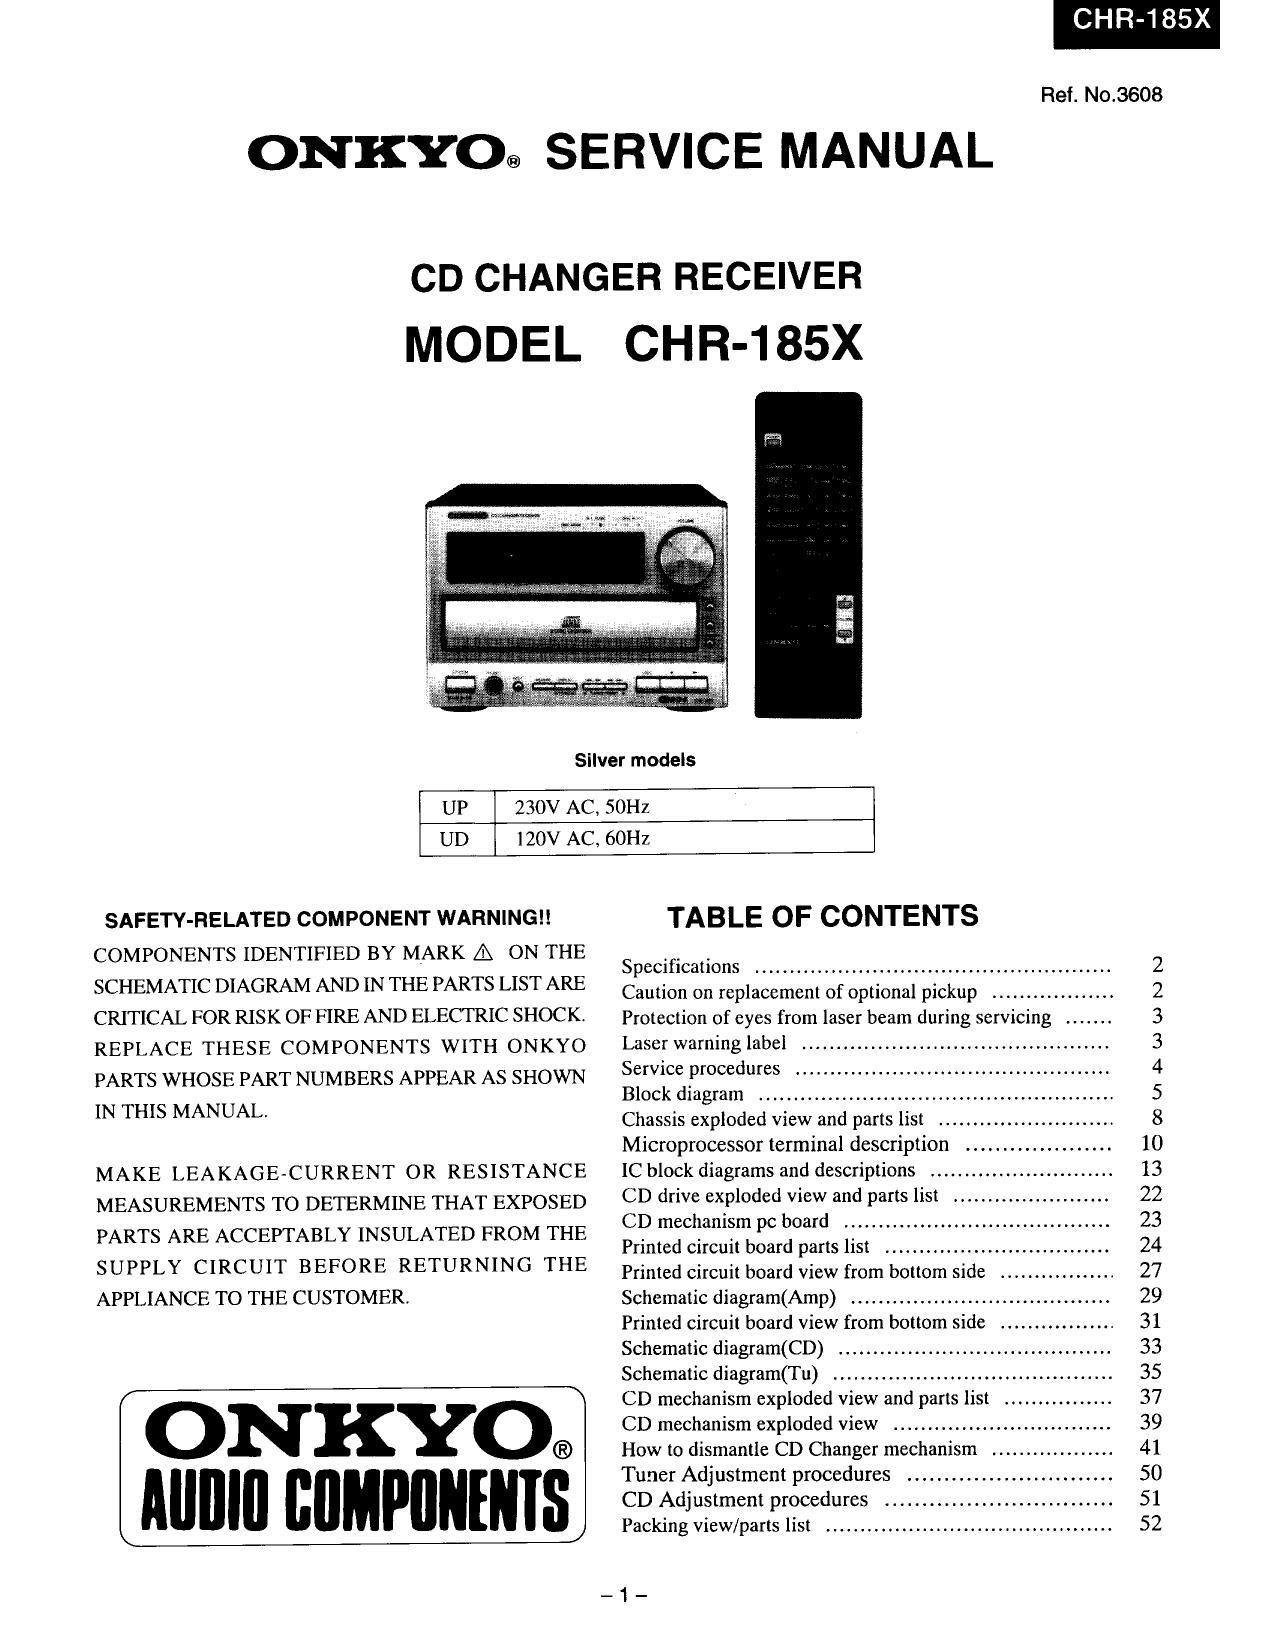 Onkyo CHR 185 X Service Manual